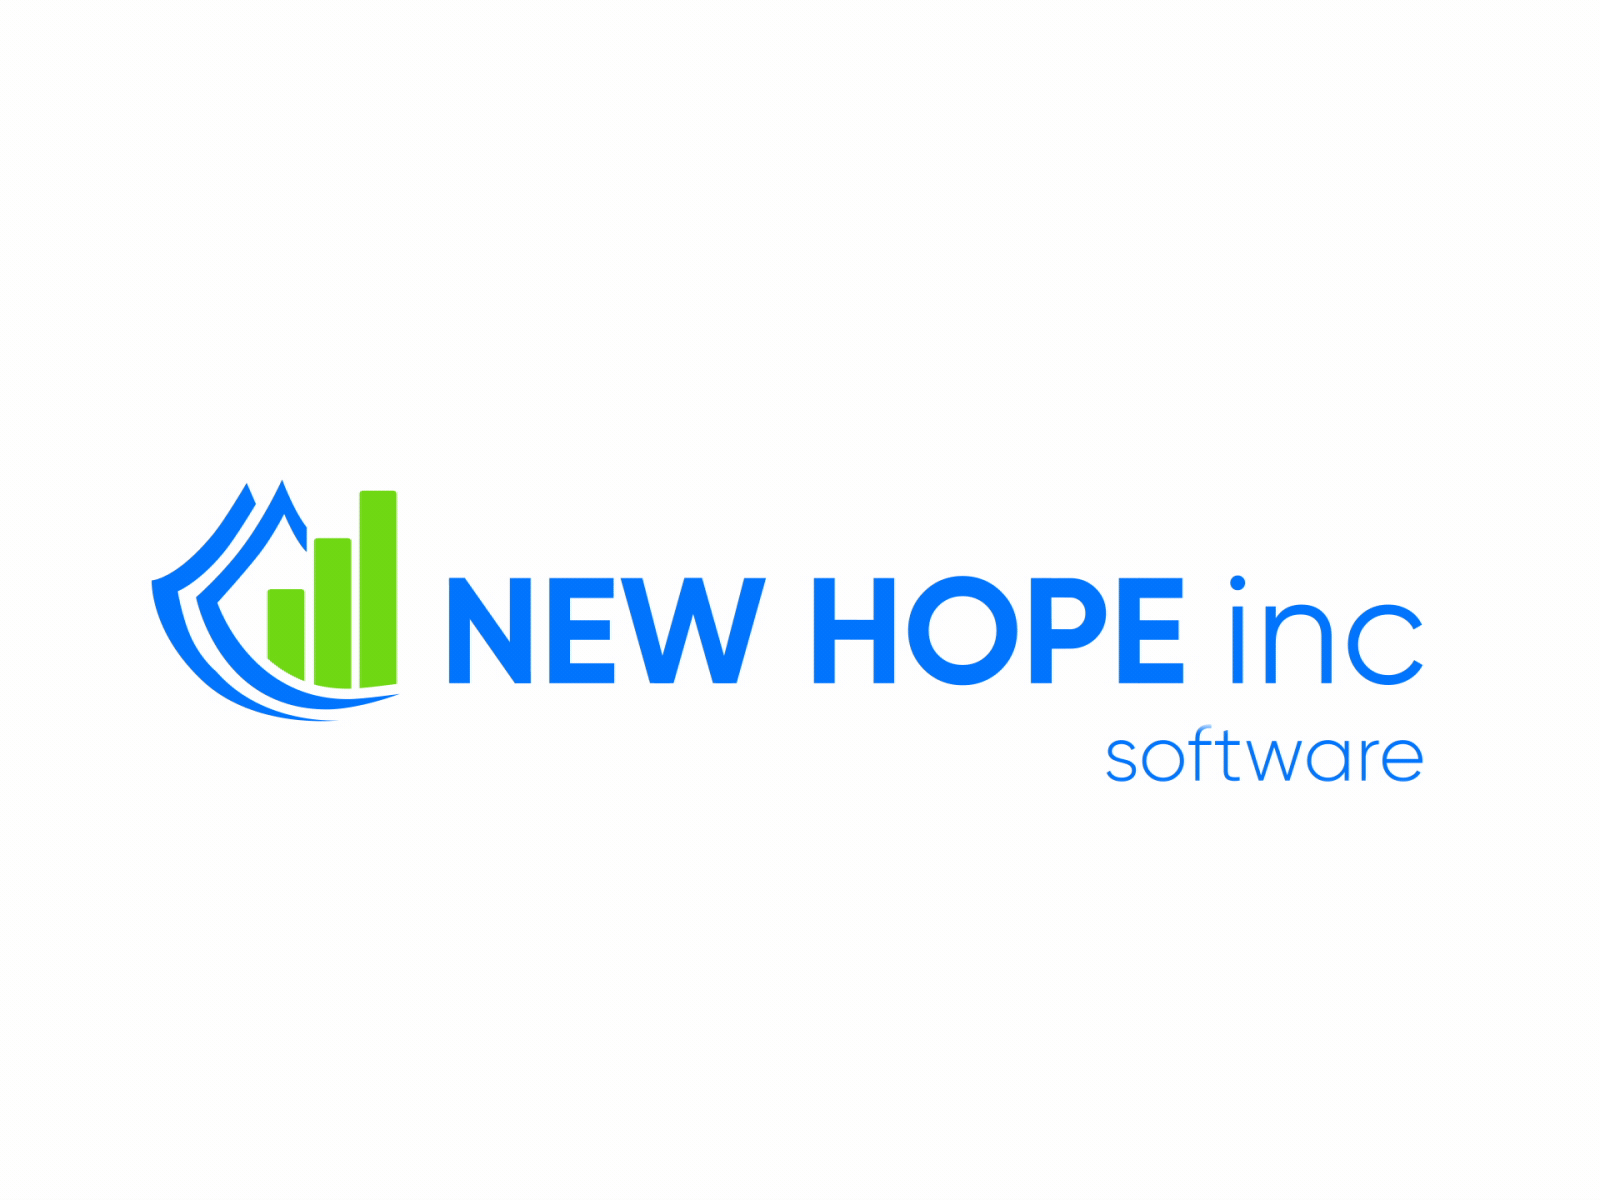 New hope logo animation animated animation animation 2d design illustration logo logo animation motion design motion graphics ui